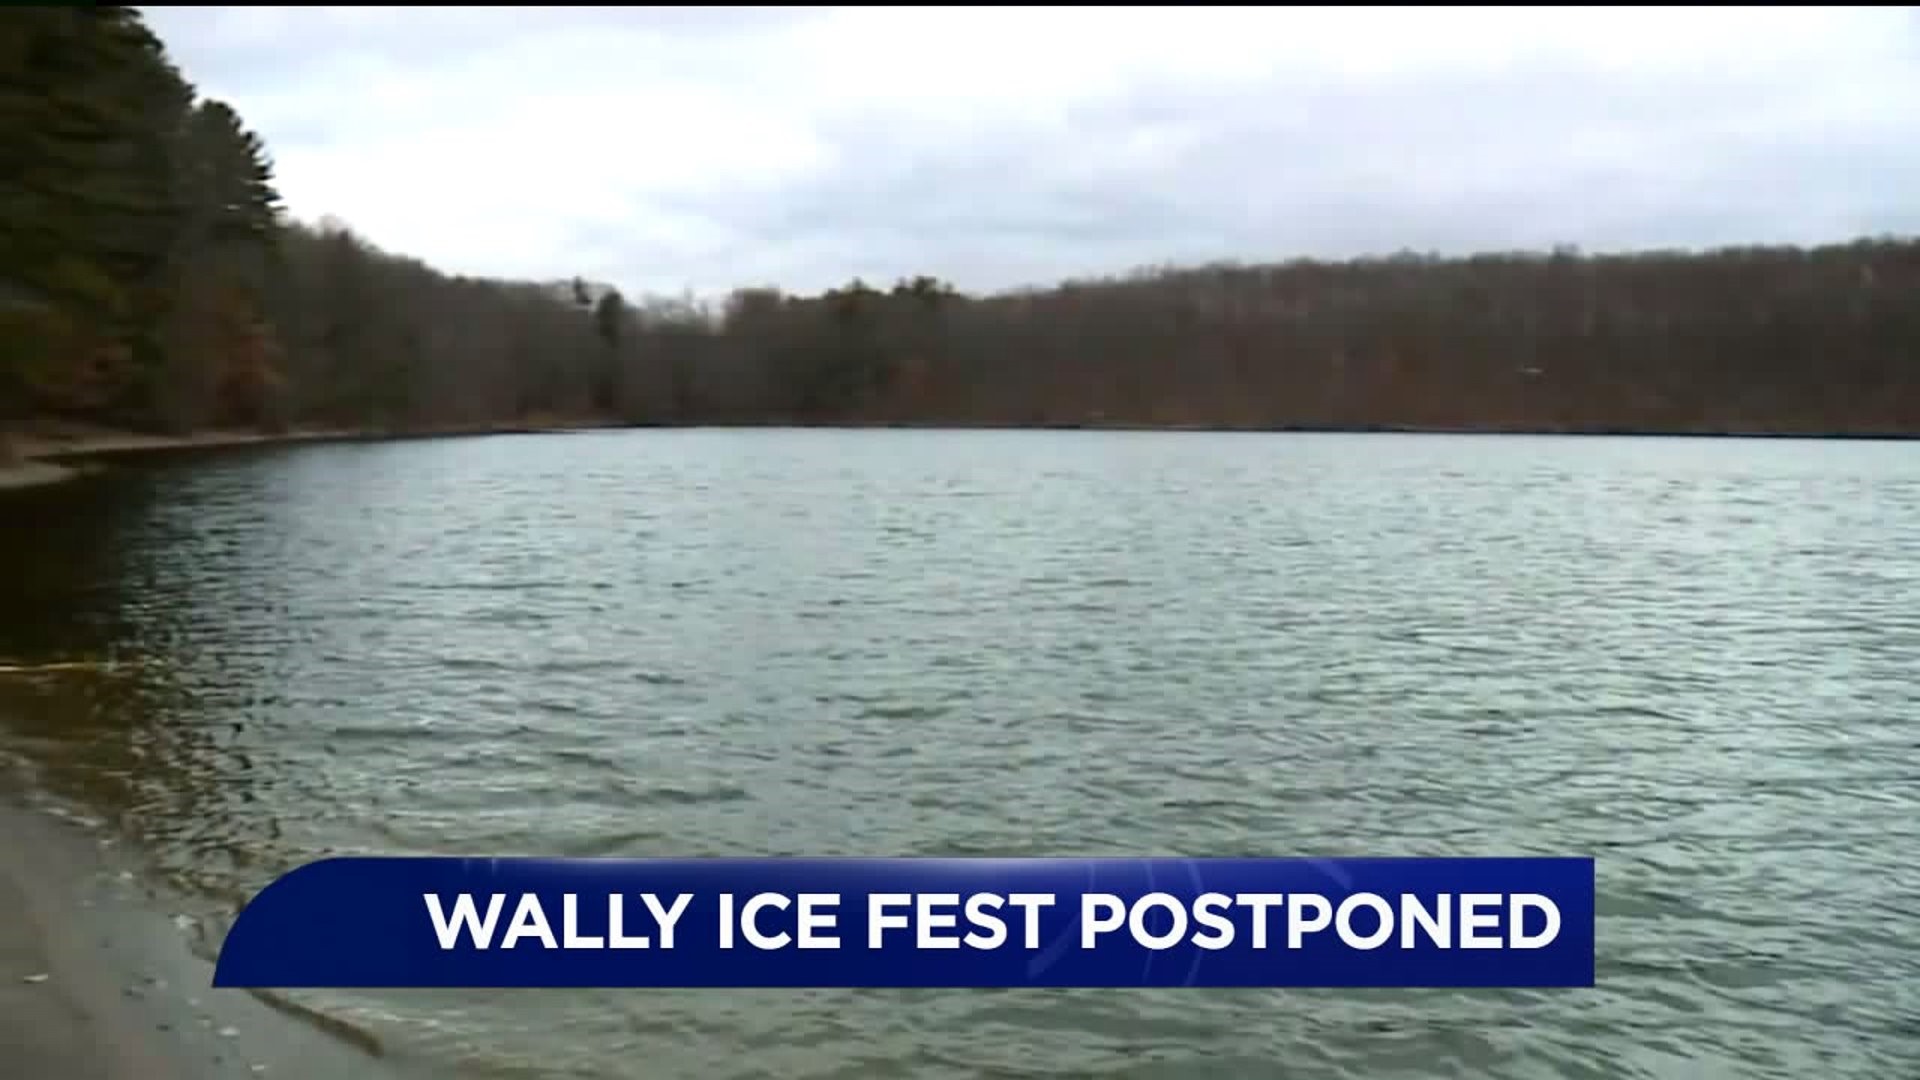 Lodges Adjust Reservations After Wally Ice Fest Gets Postponed